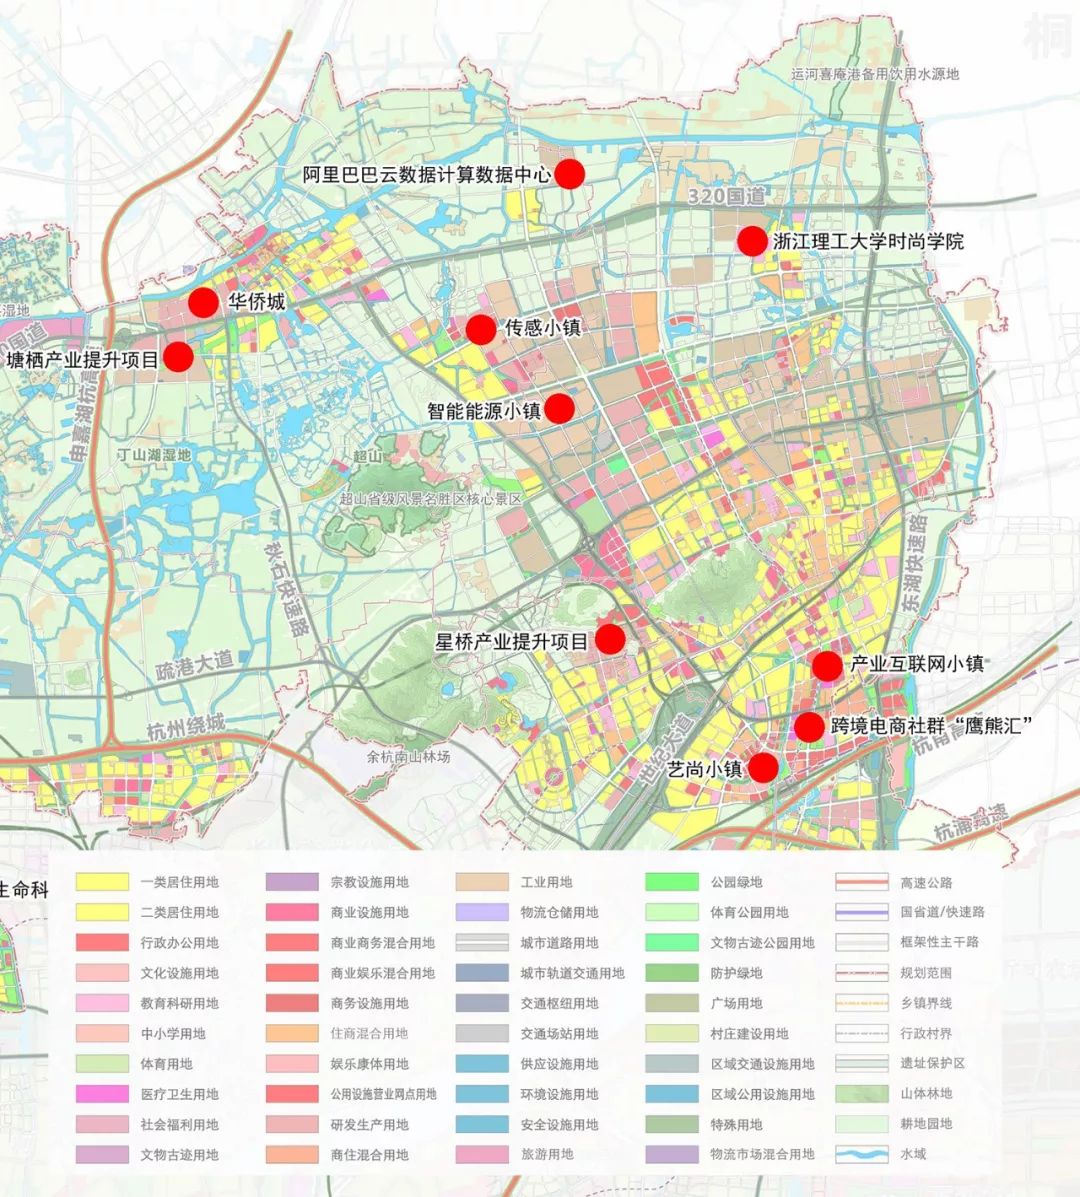 杭州市余杭分区规划20172020征求意见公布大临平北都有哪些规划